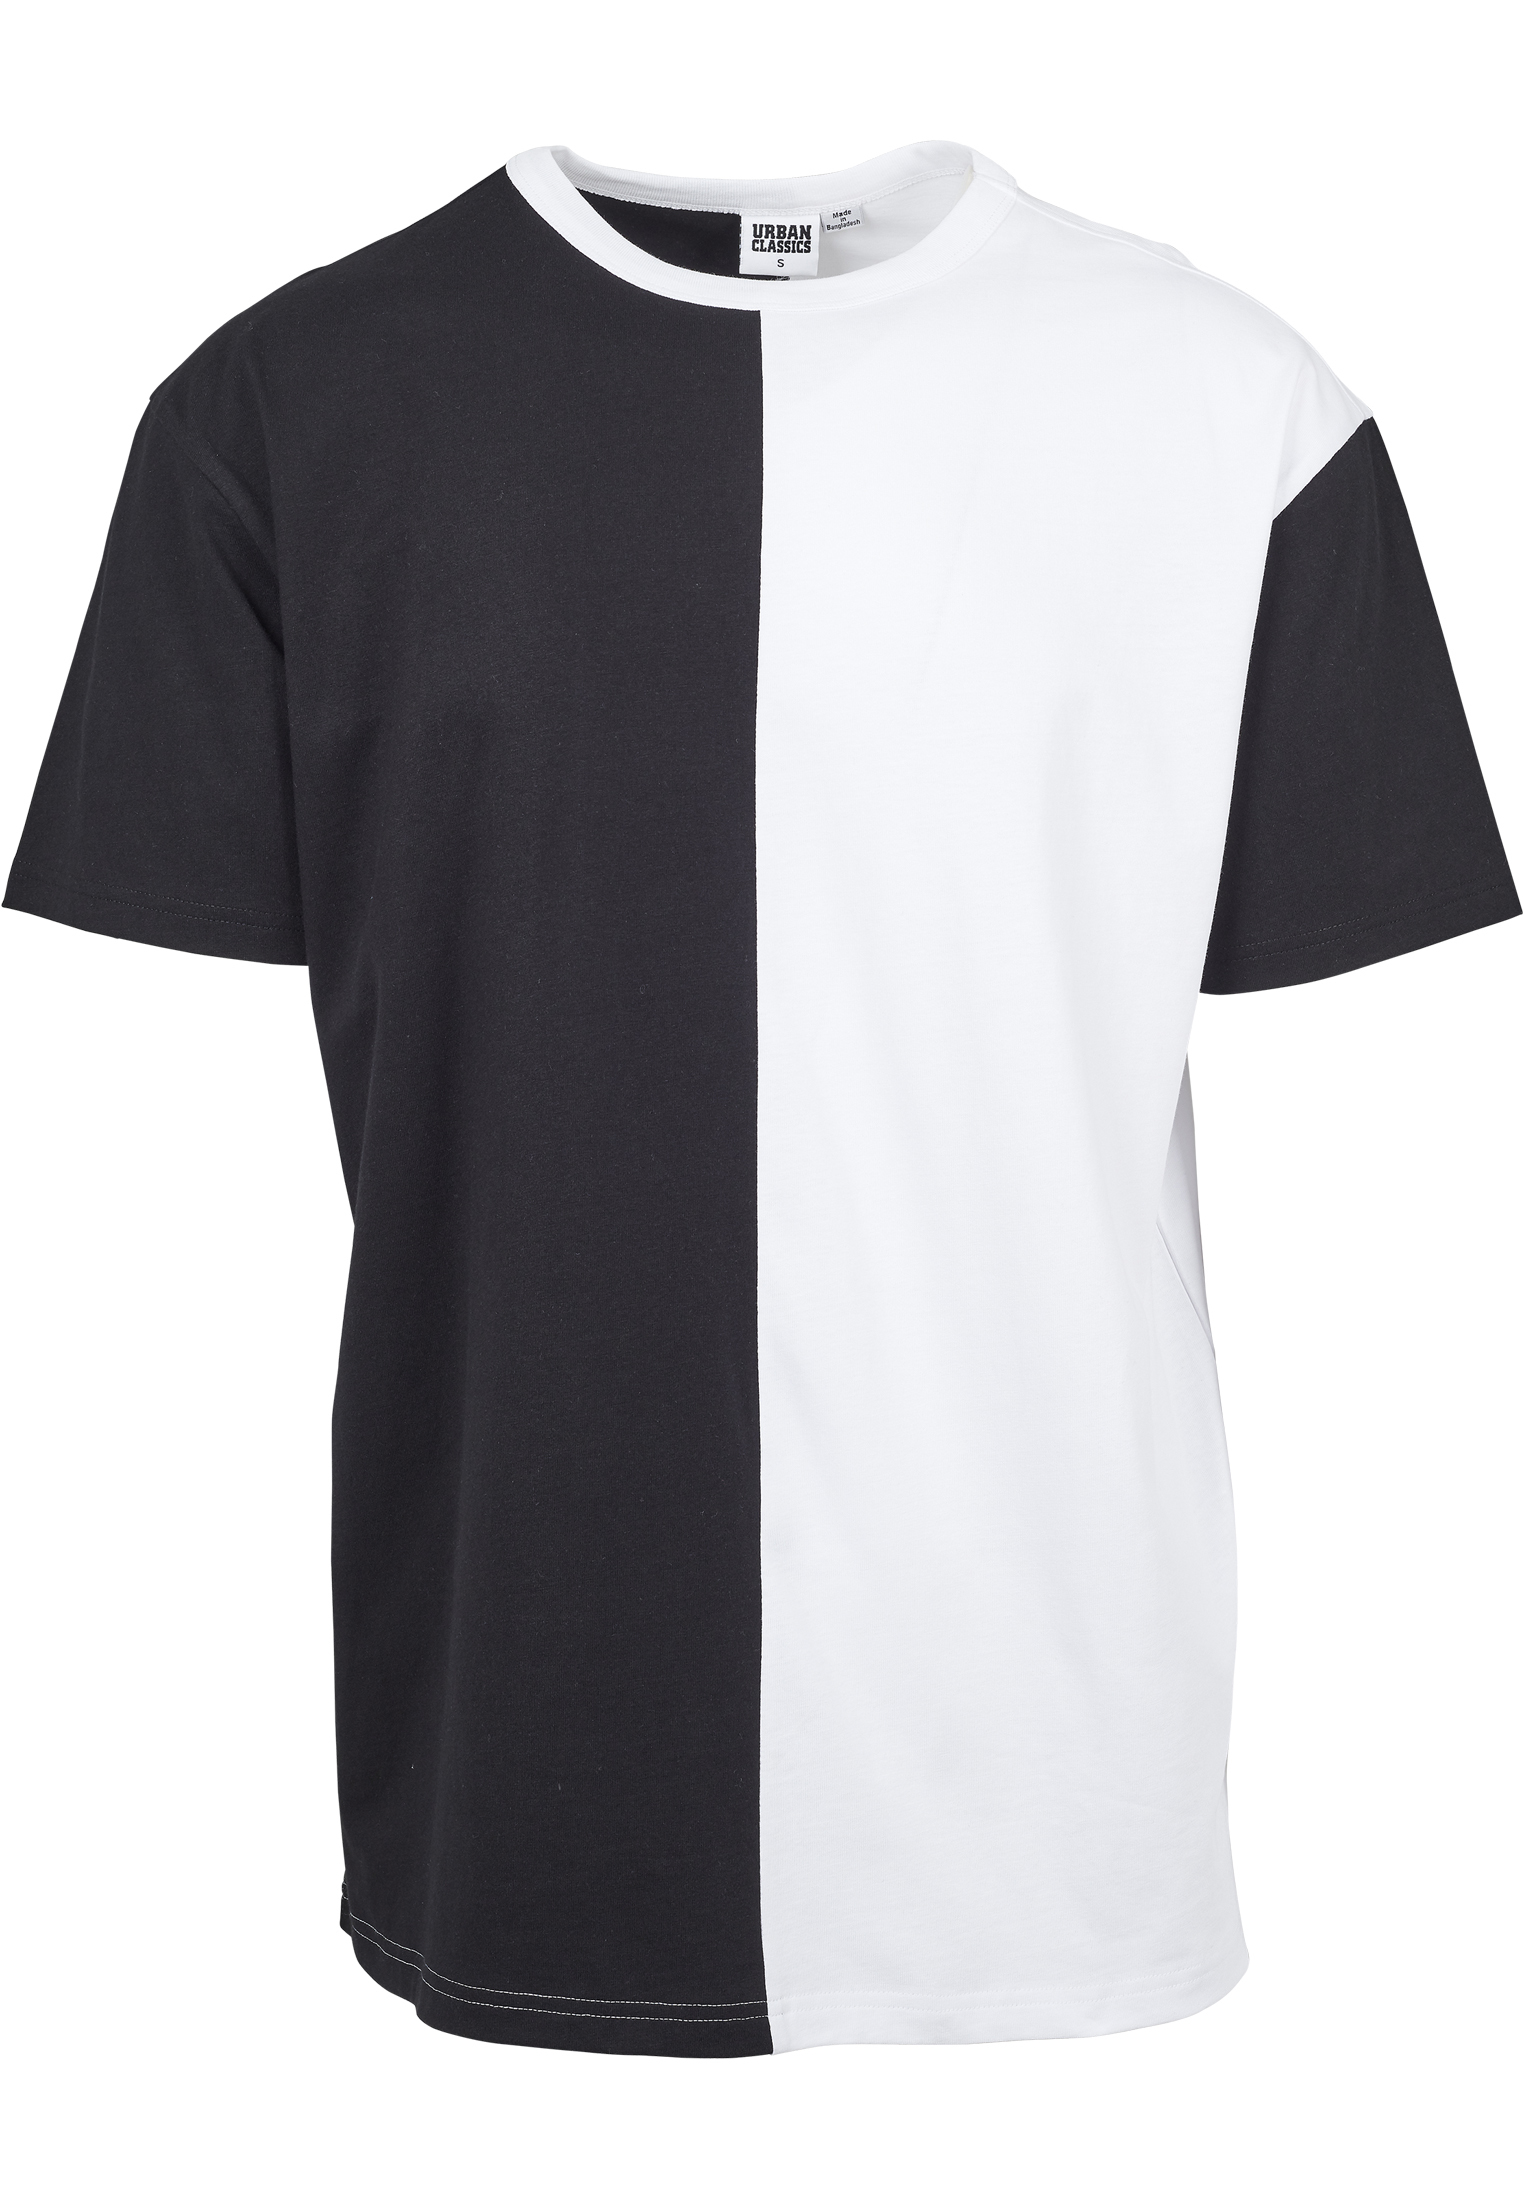 Odzież Plus size Urban Classics Koszulka Harlequin w kolorze Czarny, Białym 